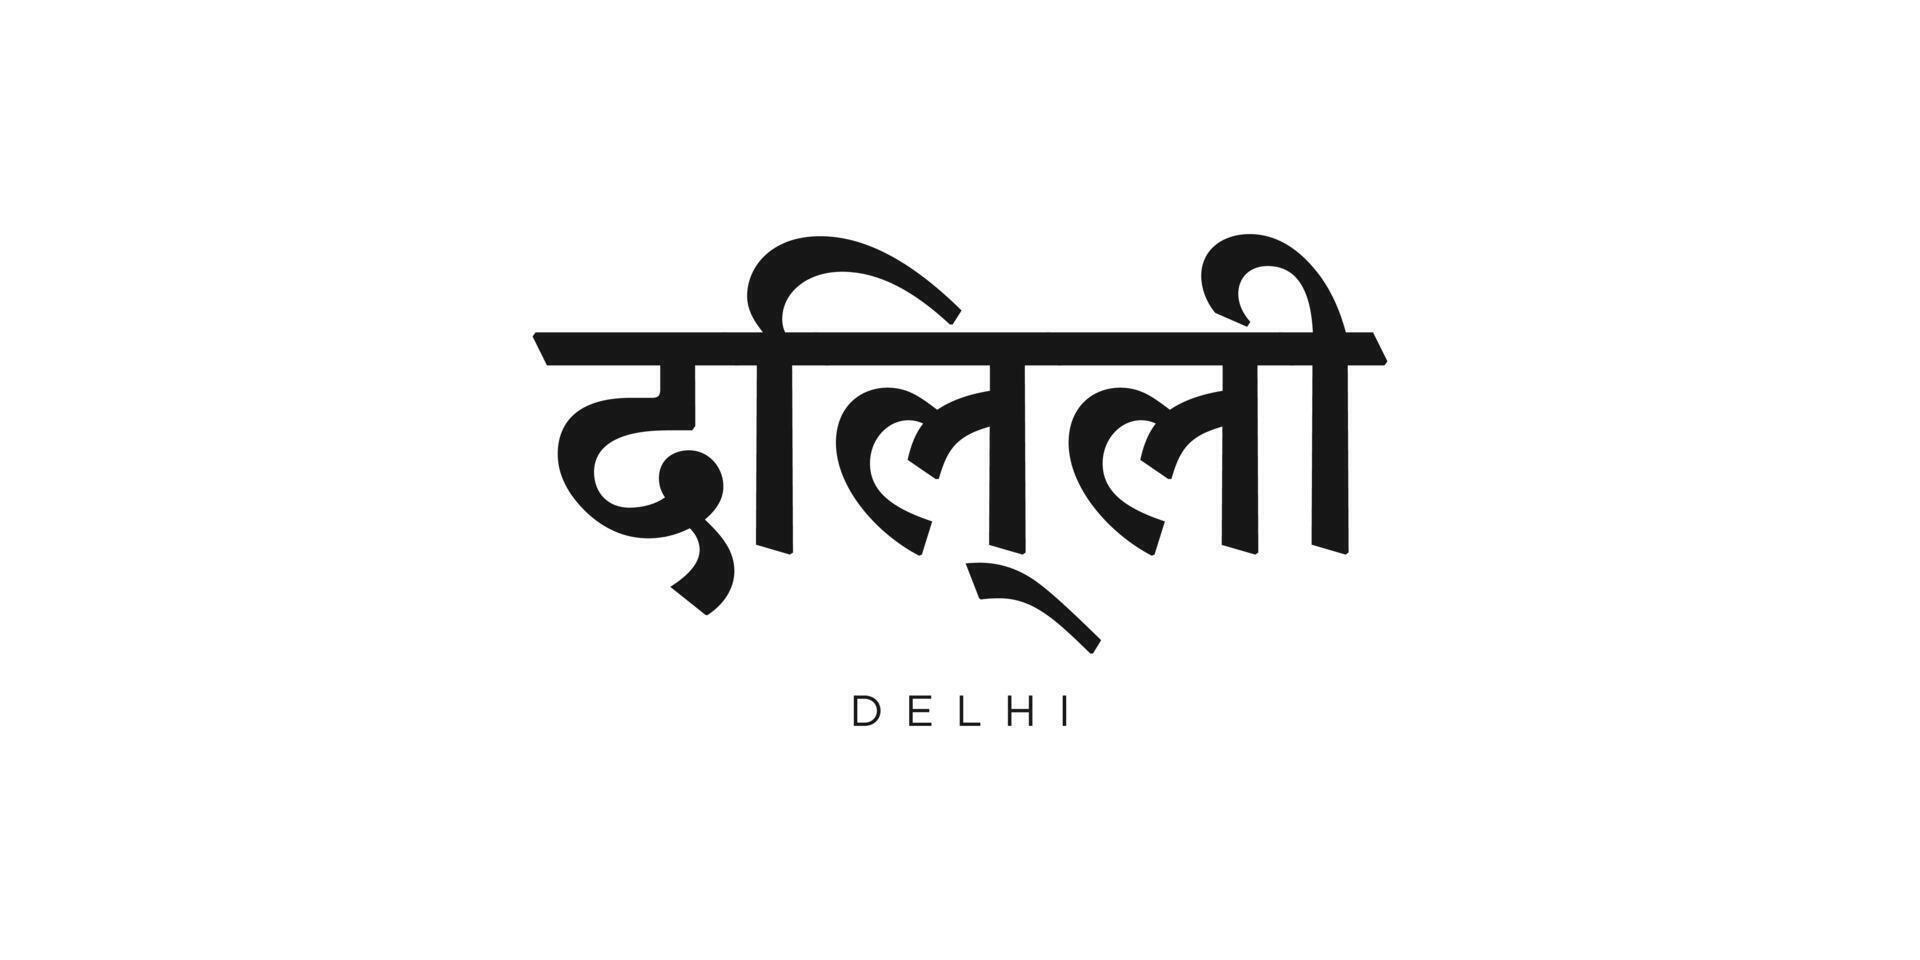 delhi i de Indien emblem. de design funktioner en geometrisk stil, vektor illustration med djärv typografi i en modern font. de grafisk slogan text.